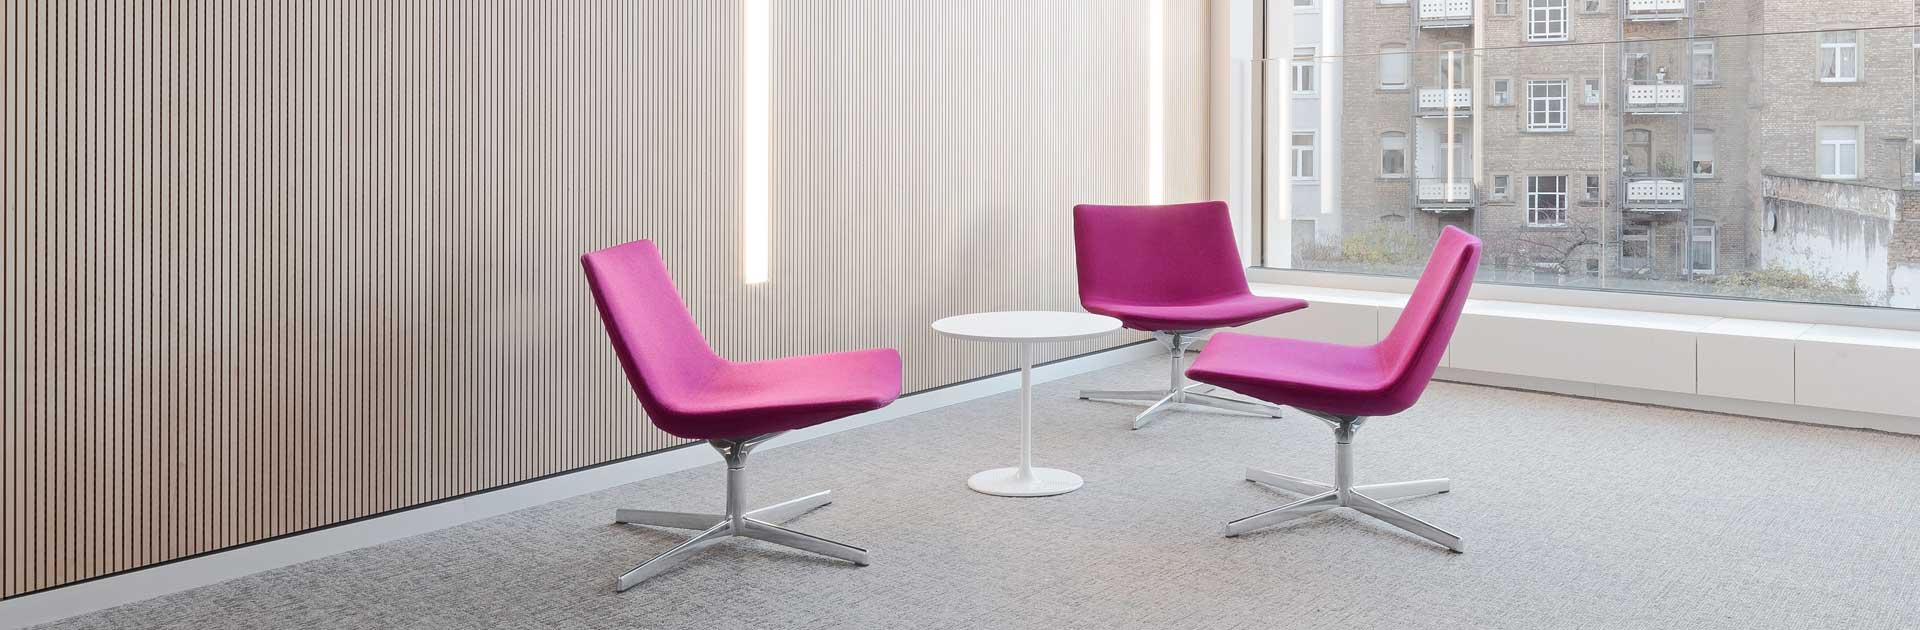 Drei violett gepolsterte Stühle sind um einen weißen, runden Tisch gruppiert. Im Hintergrund befindet sich ein bodentiefes Fenster. Links ist die Wand mit hellem Holz verkleidet. Der Teppichboden und die Decke sind hellgrau.